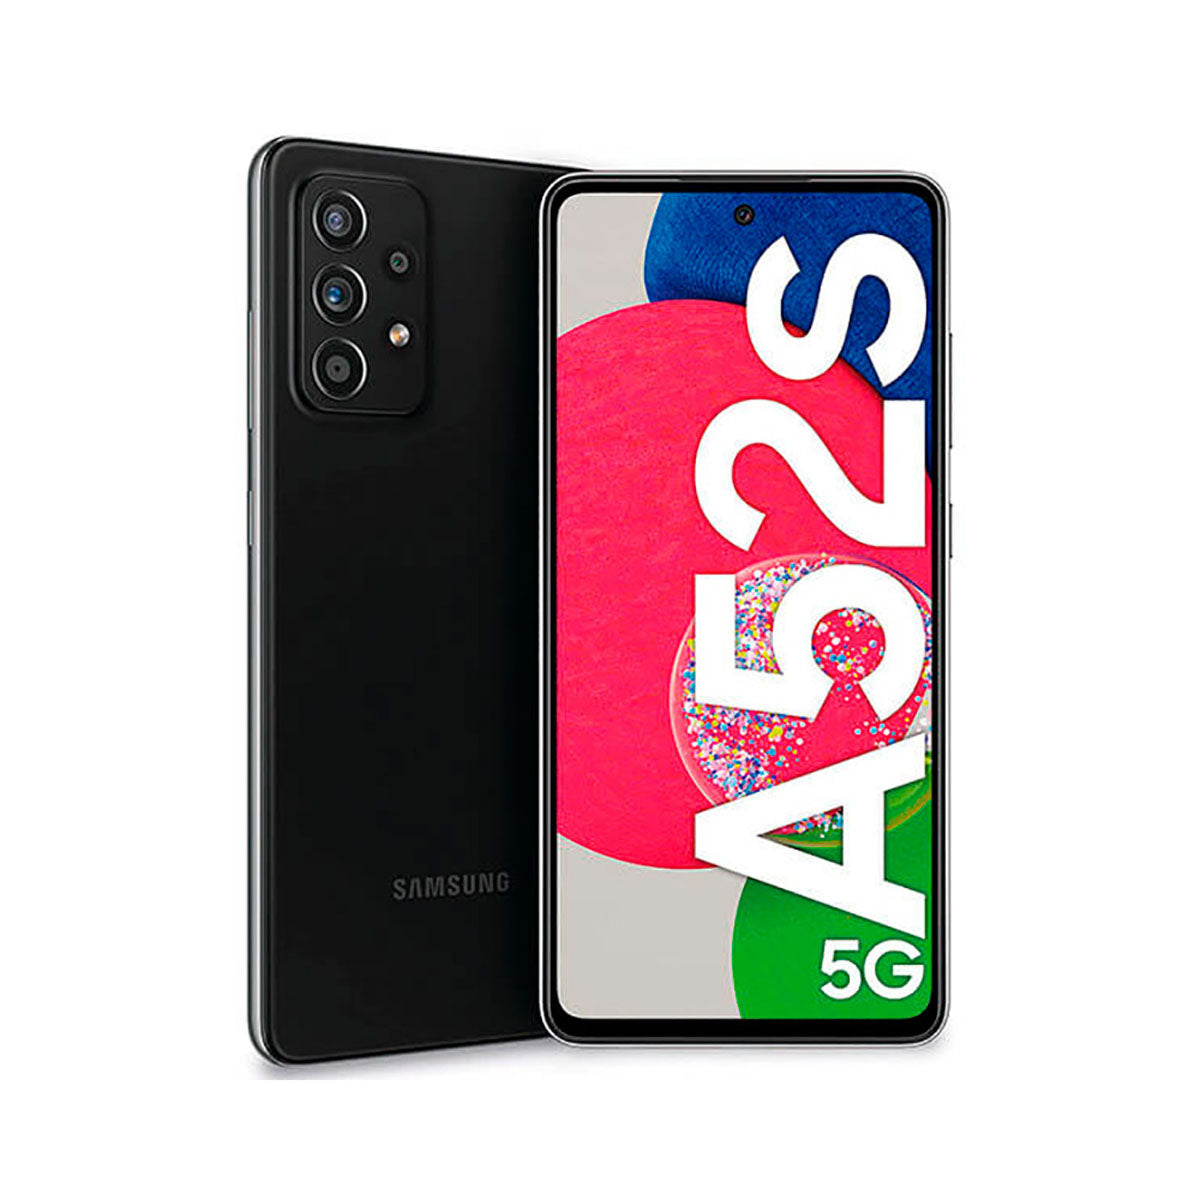 Samsung Galaxy A52s 5G 6GB/128GB Black (Awesome Black) Dual SIM SM-A528B Enterprise Edition